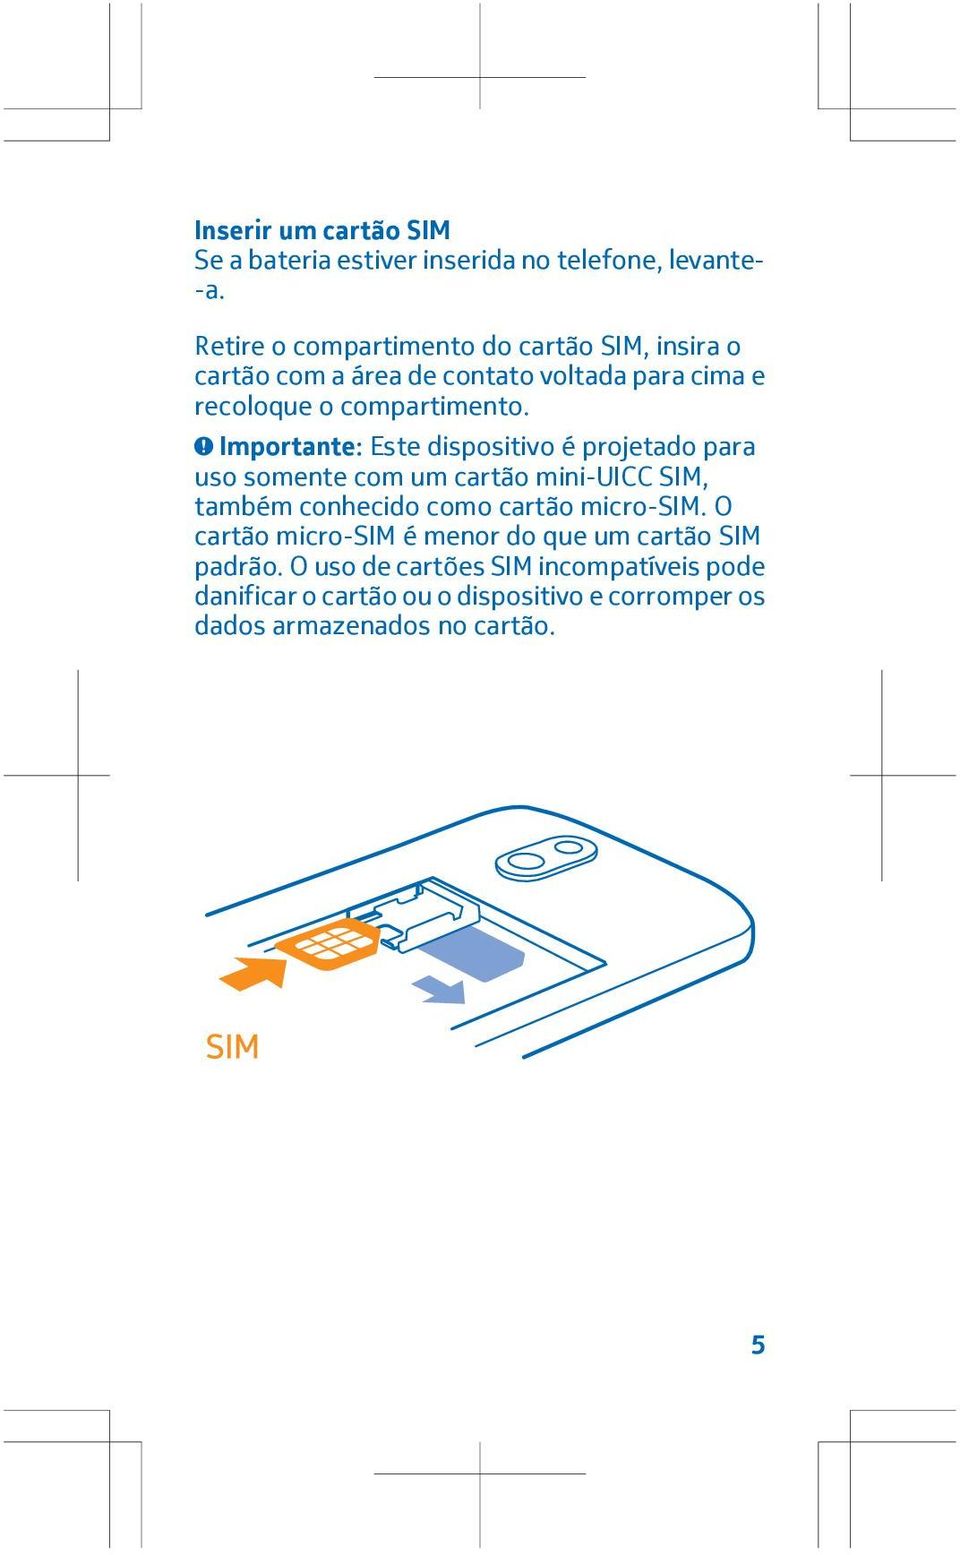 Importante: Este dispositivo é projetado para uso somente com um cartão mini-uicc SIM, também conhecido como cartão micro-sim.